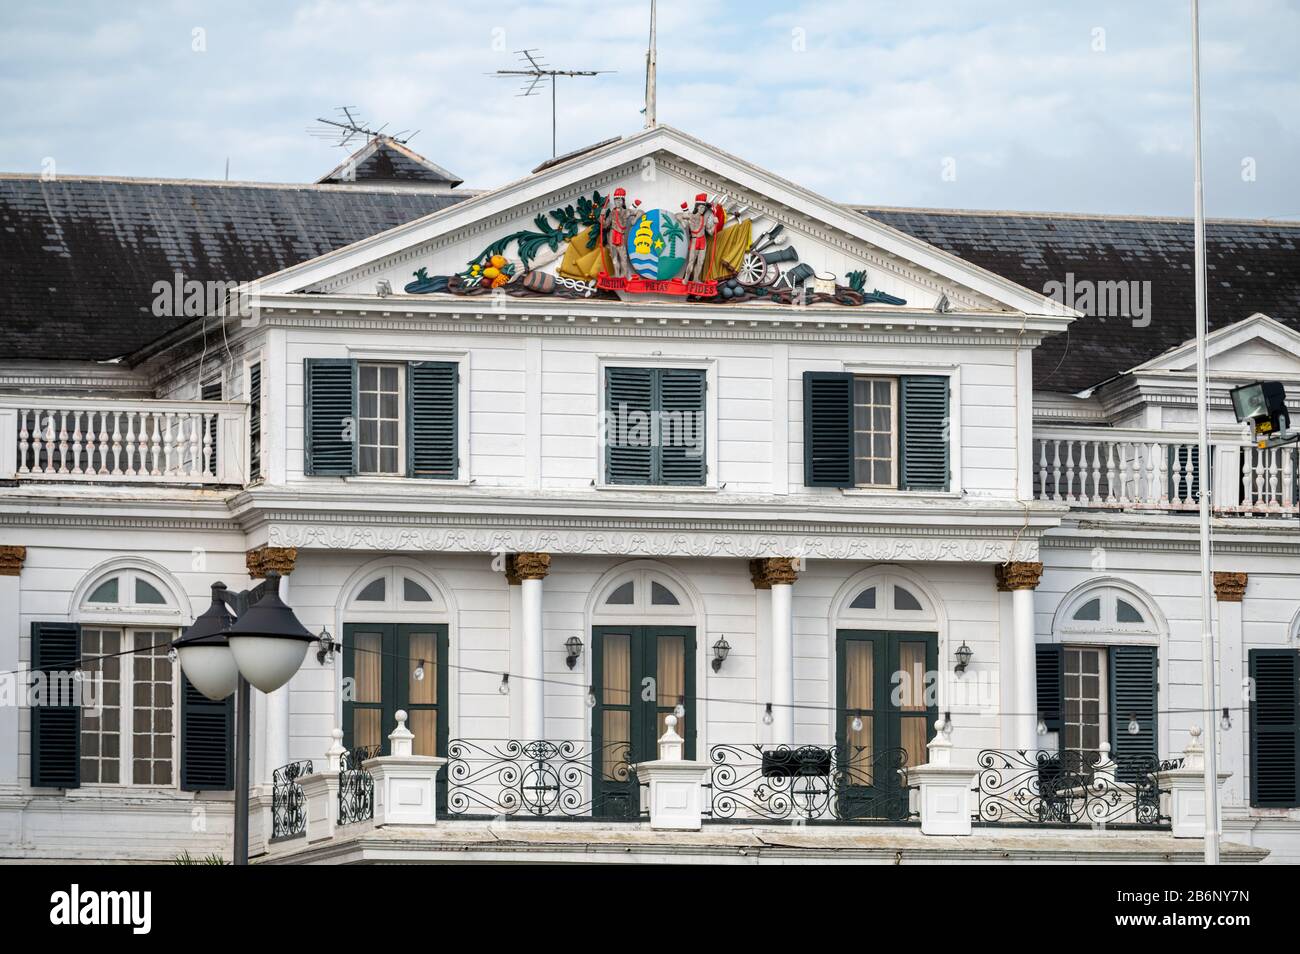 Palacio Presidencial de Suriname en Onafhankelijkheidsplein en Paramaribo, capital de la nación más pequeña de Sudamérica Foto de stock